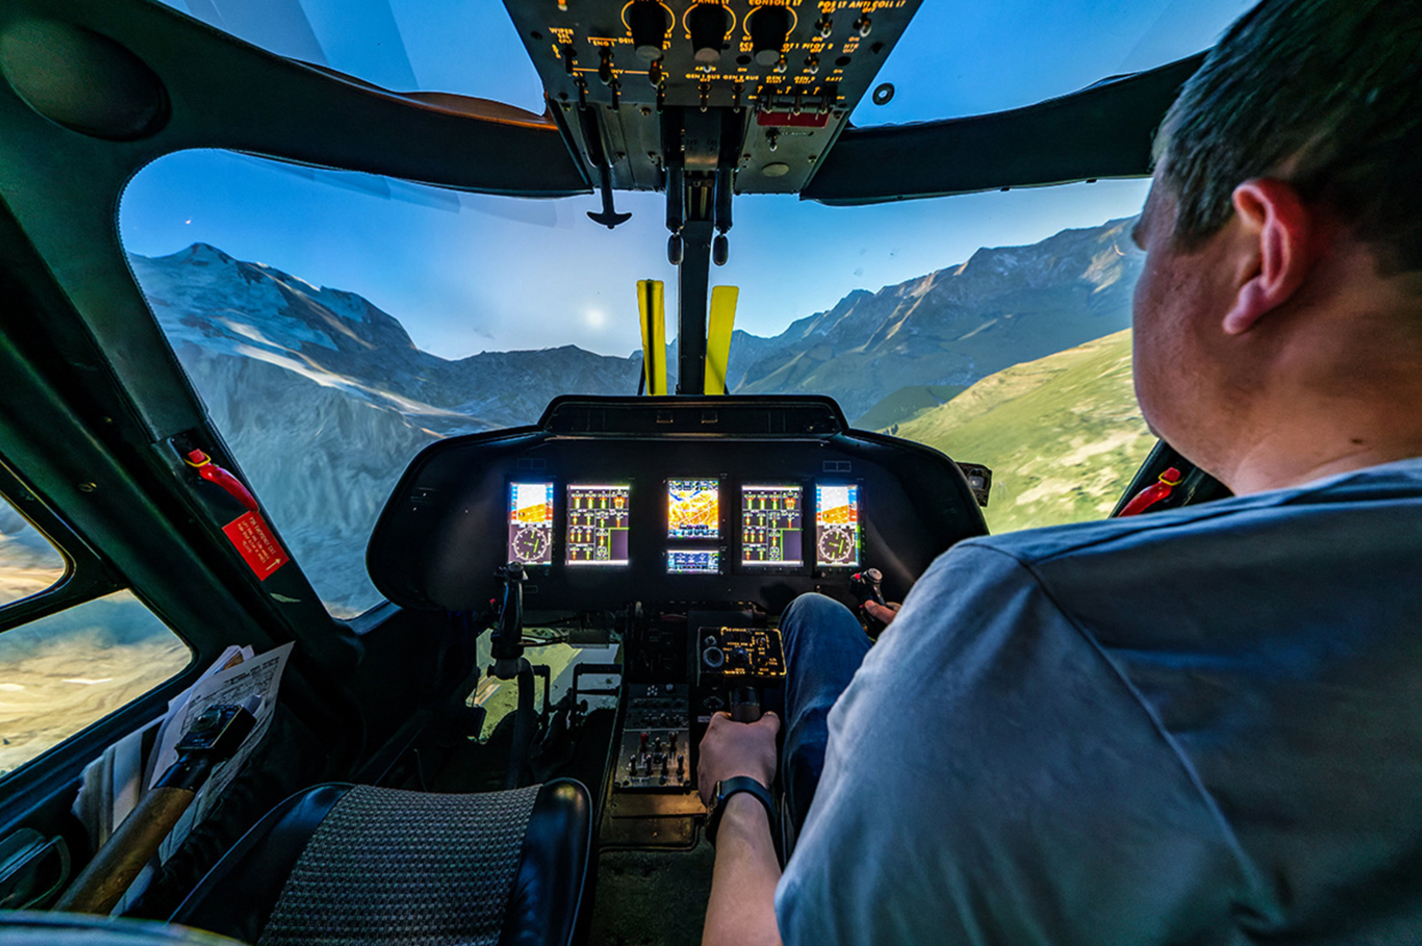 Hubschrauber Simulator in Gensingen